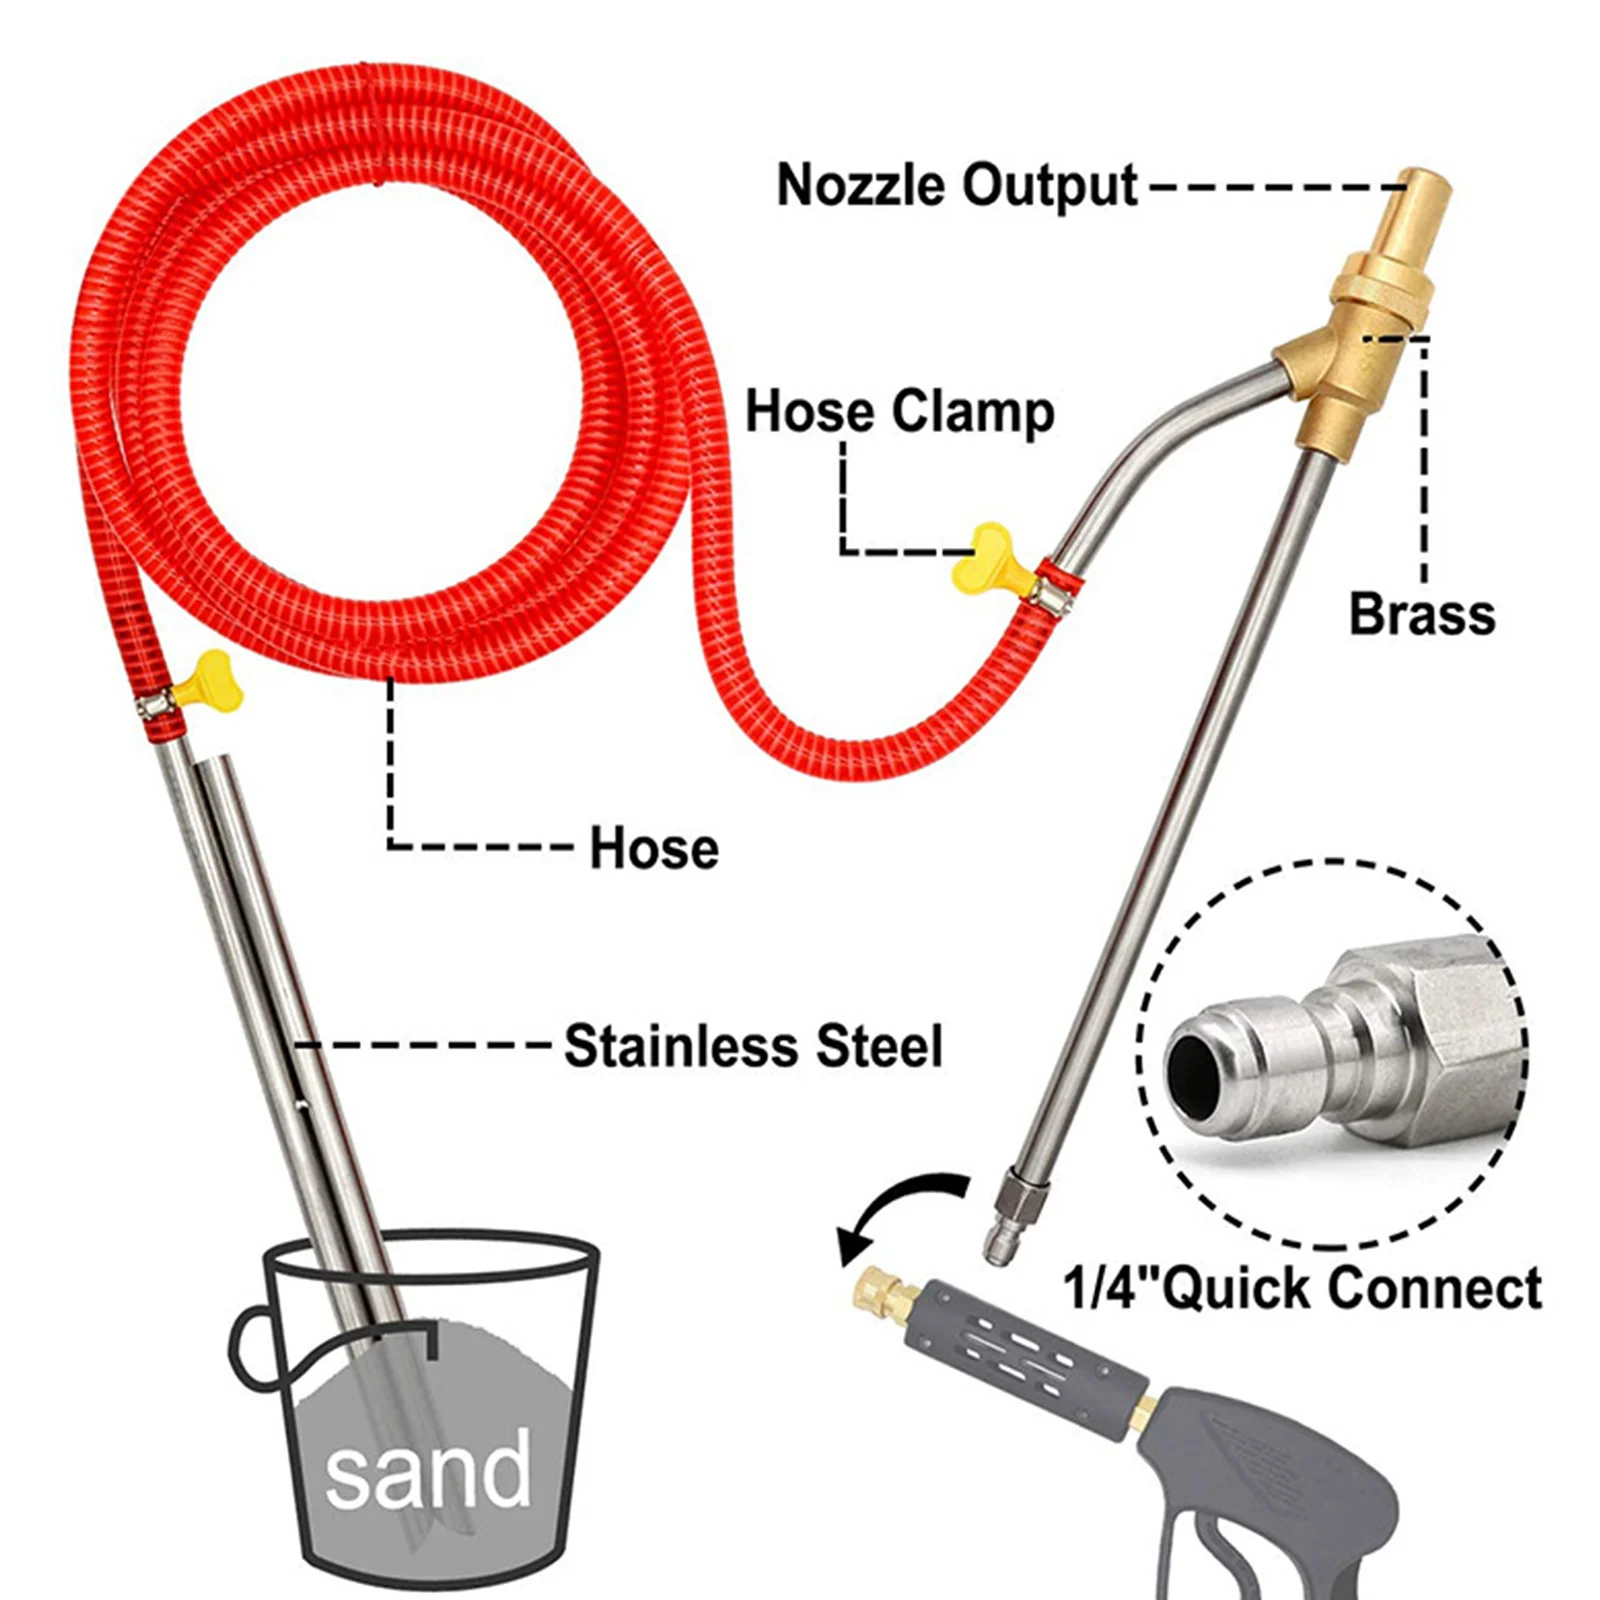 Lavadora de alta pressão ajustável, Sandblasting Kit, Sandblaster molhado, Lance bocal acessório, desconexão rápida